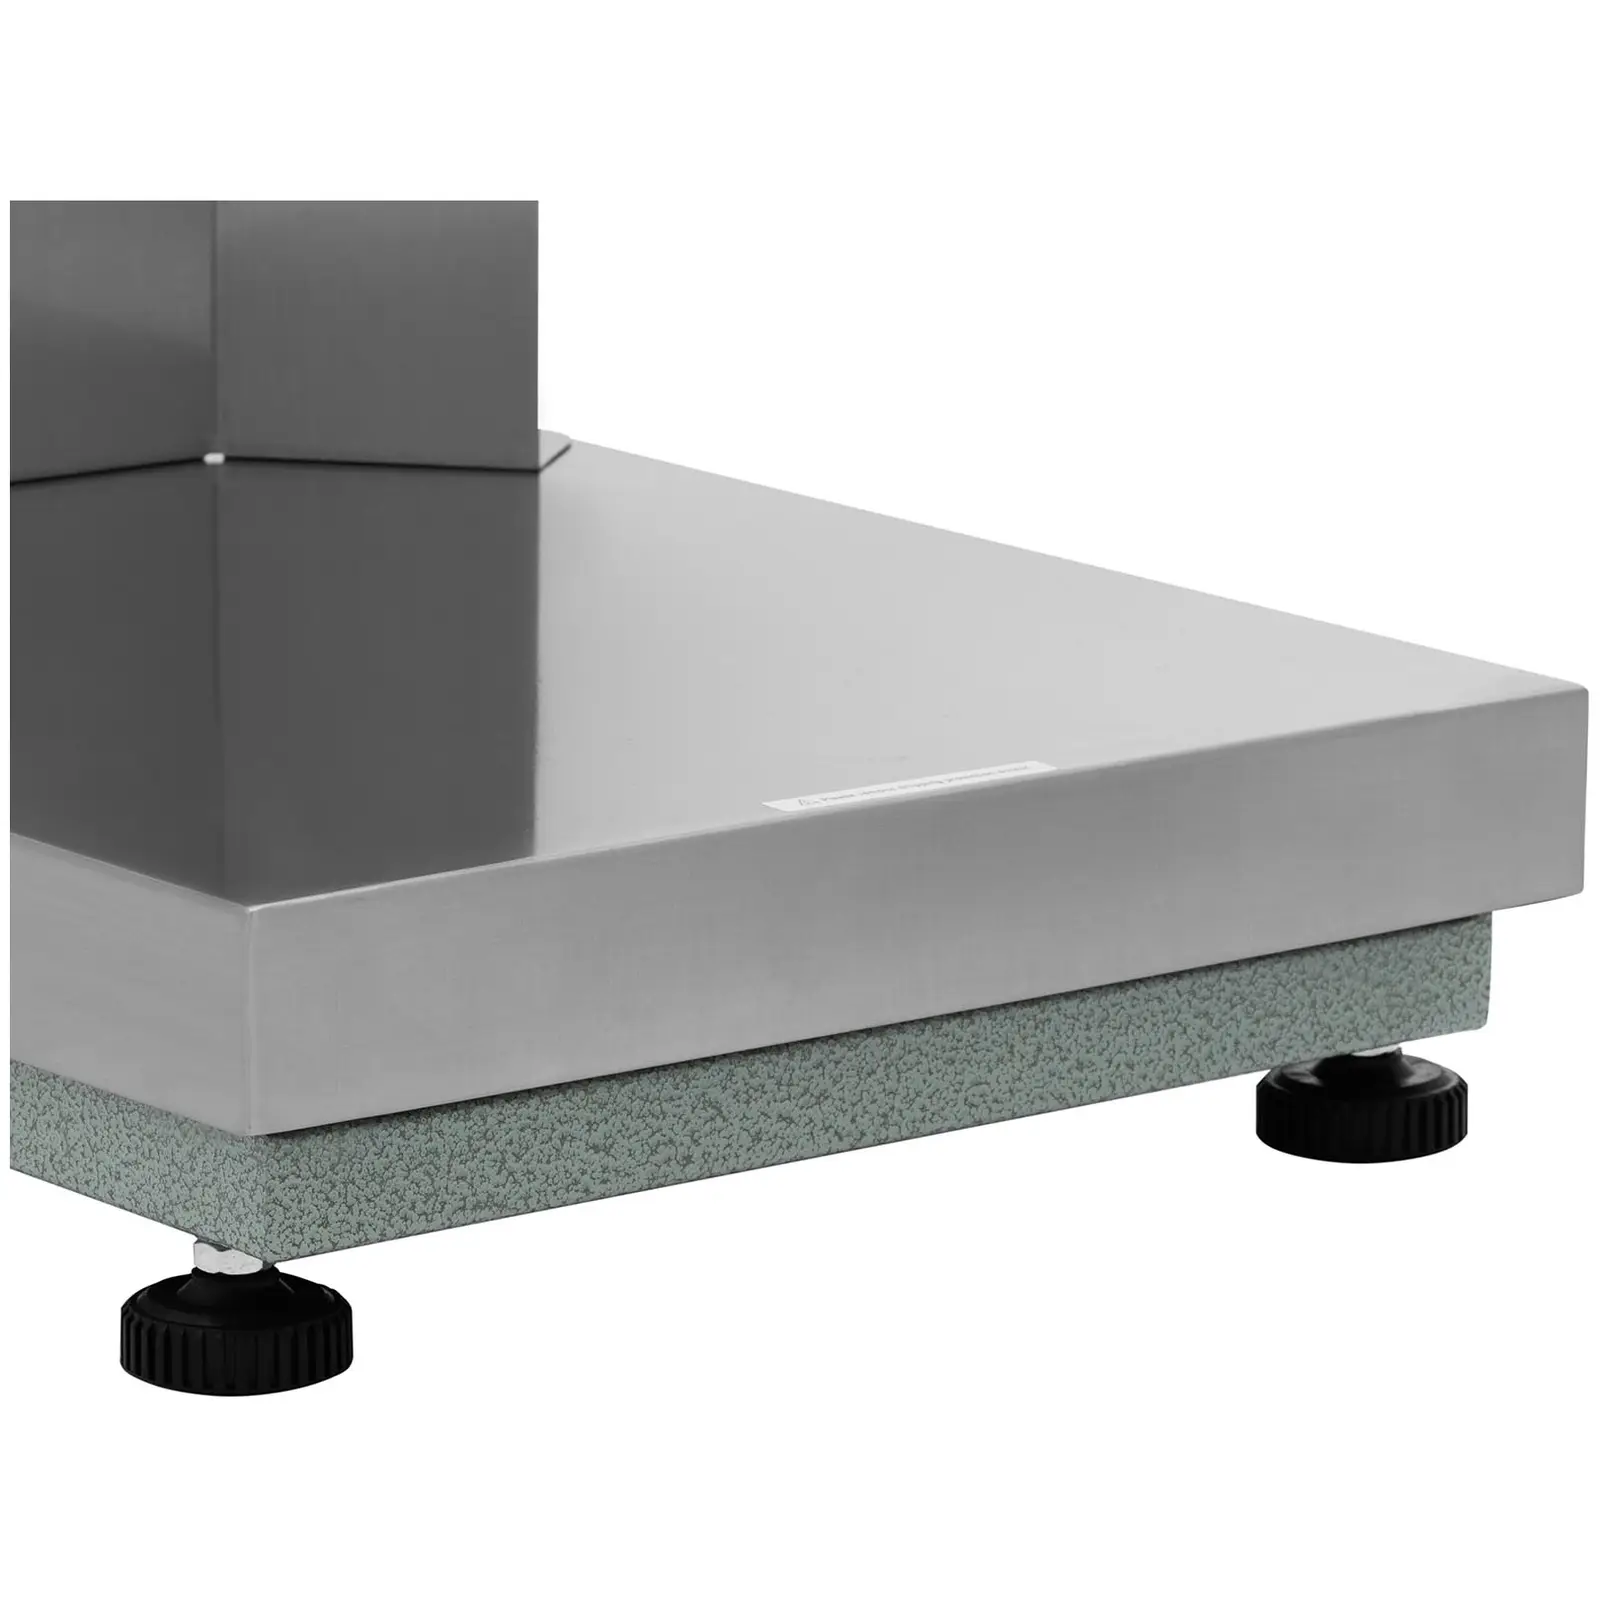 Platform Scale - 300 kg / 0.02 kg - 400 x 500 mm - back panel